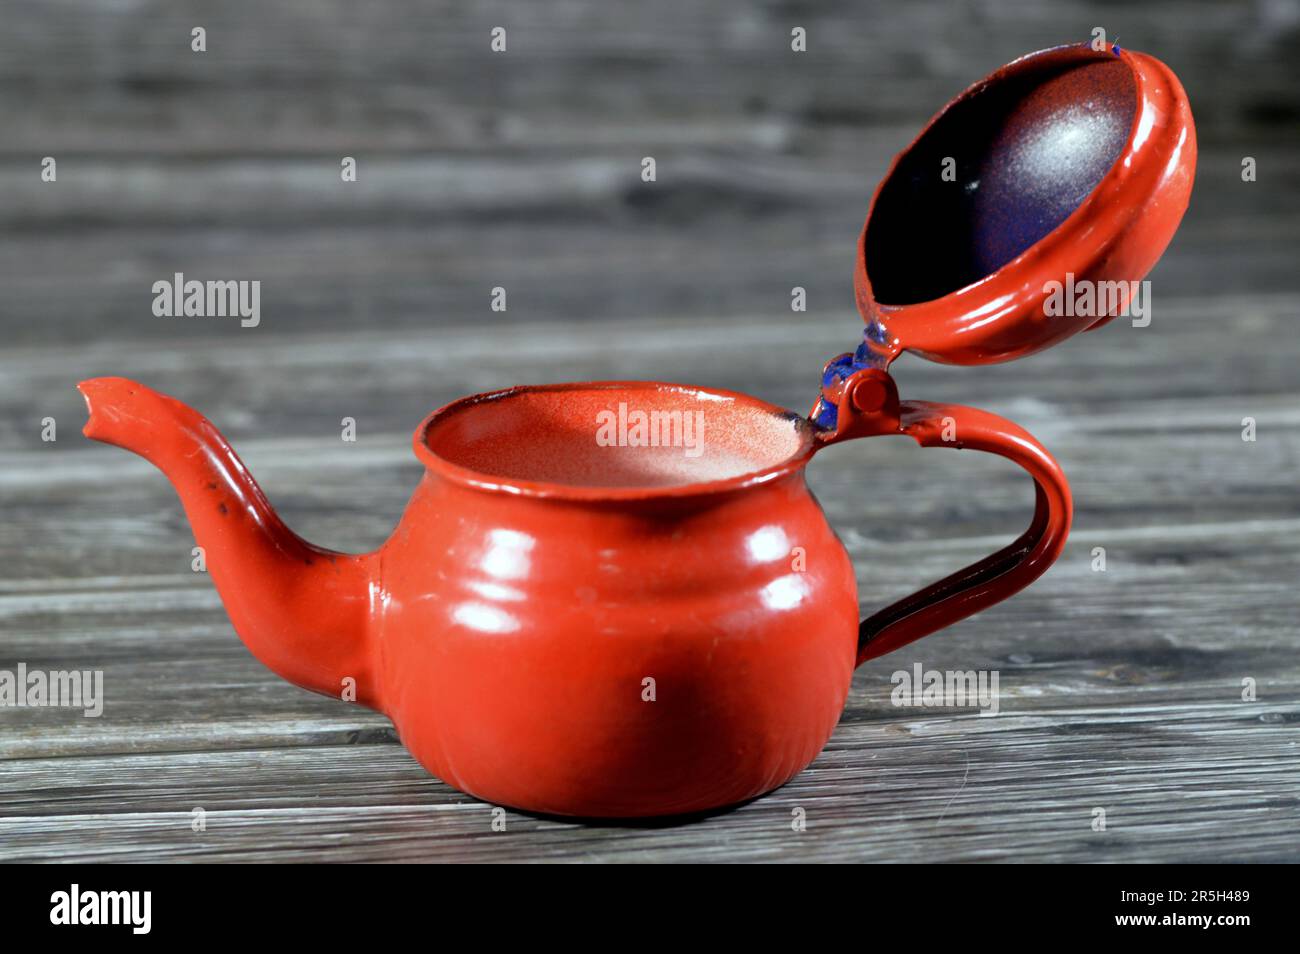 Théière rétro vintage de style ancien, théière rouge isolée sur fond en bois, contenant pour préparer et servir du thé avec une poignée et une ouverture en forme de forme Banque D'Images